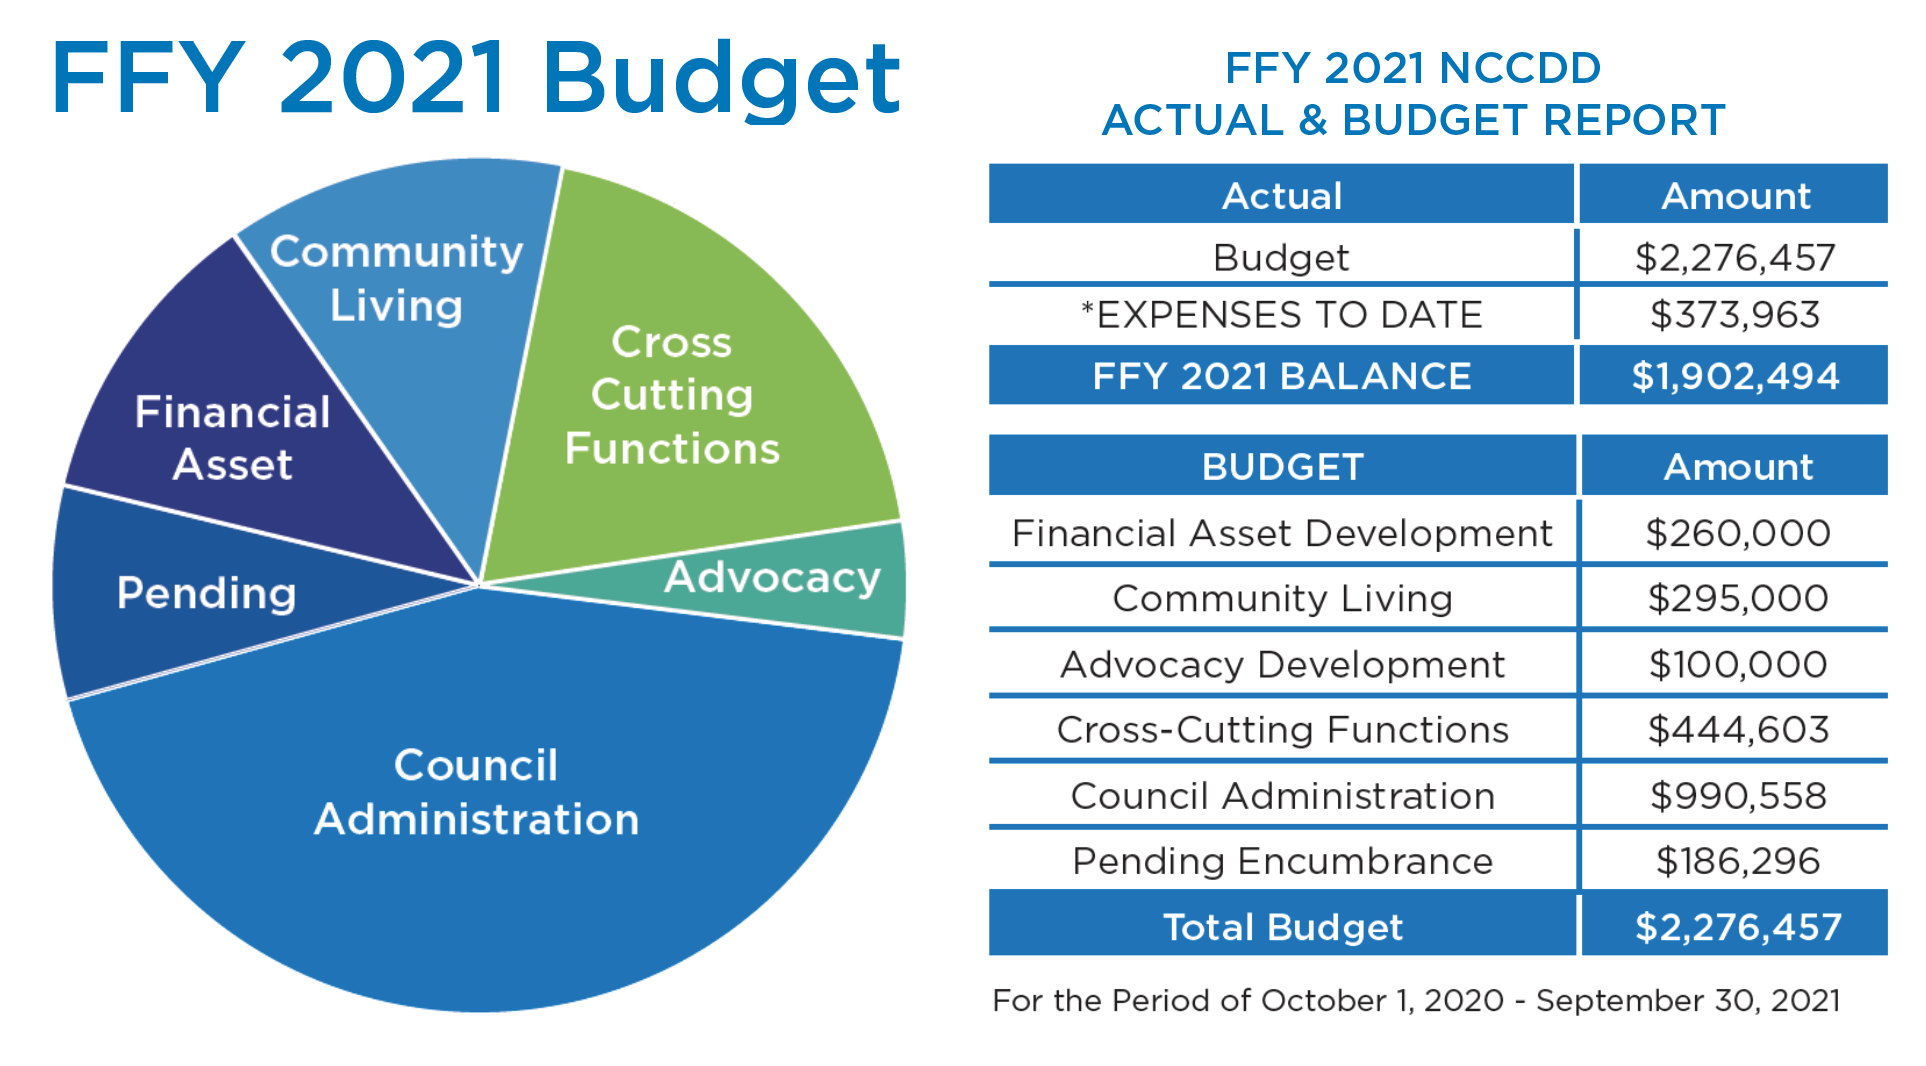 NCCDD FFY 2021 Budget 